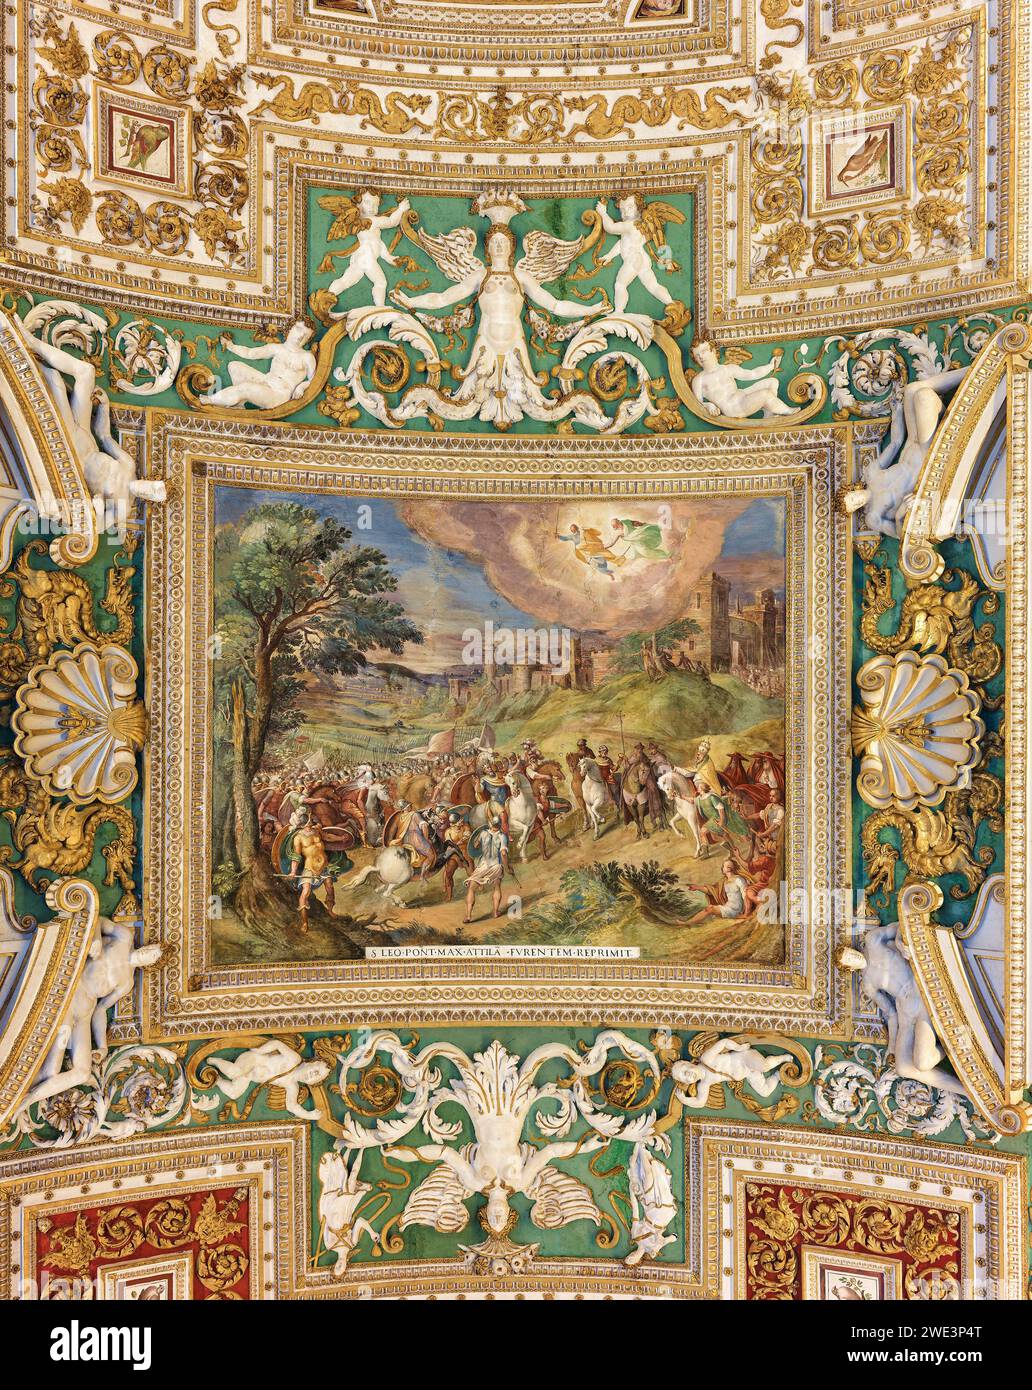 Peinture (le Pape Saint Léon affronte Attila le Hun) et décorations au plafond dans la galerie des cartes géographiques, Musée du Vatican, Rome, Italie. Banque D'Images